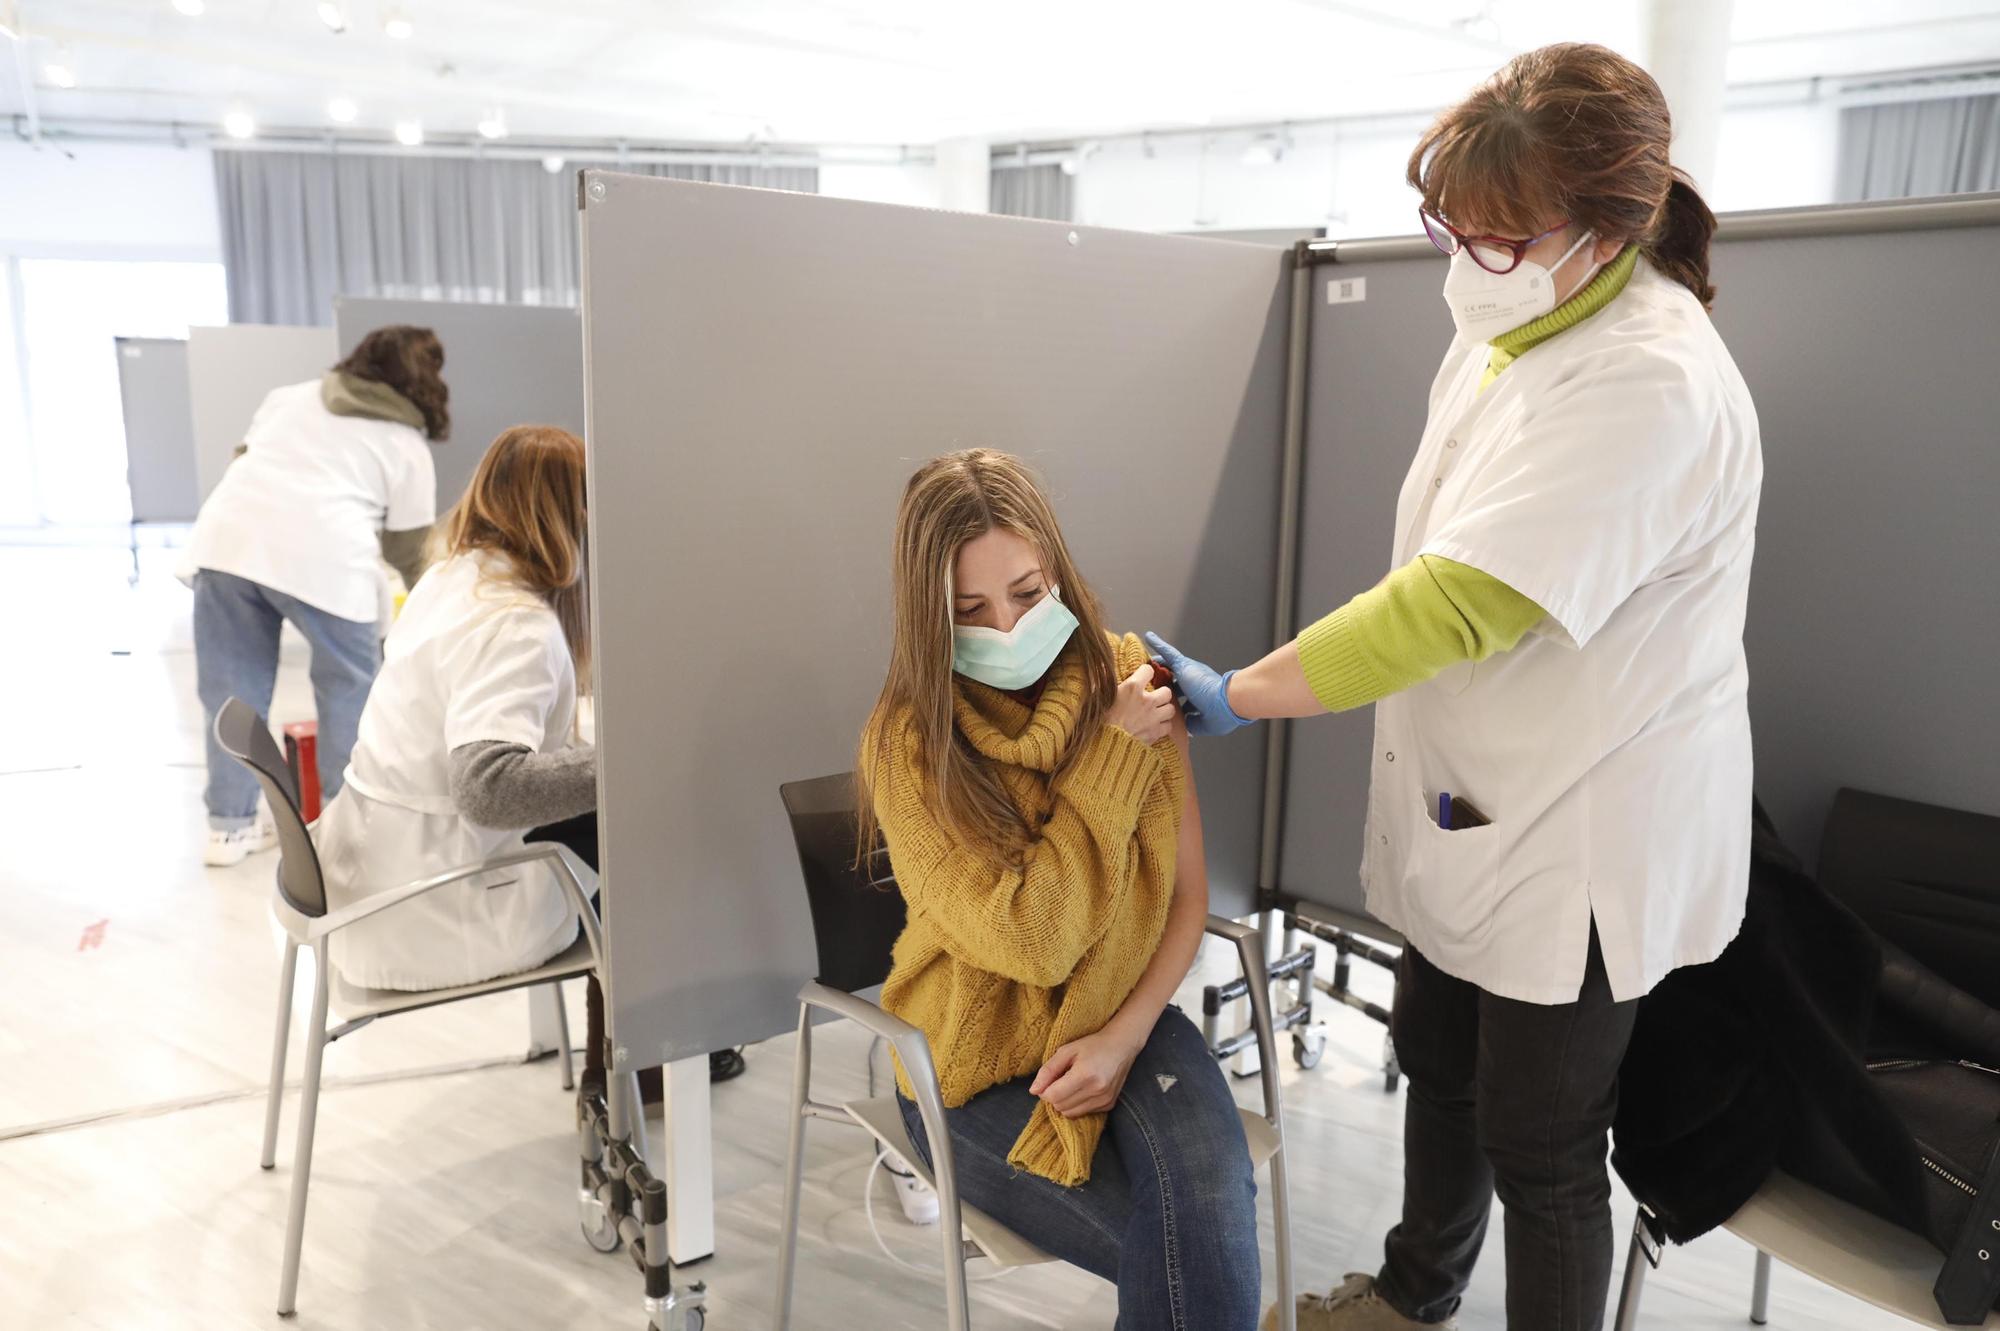 Girona vacuna sense cita prèvia per compensar les anul·lacions